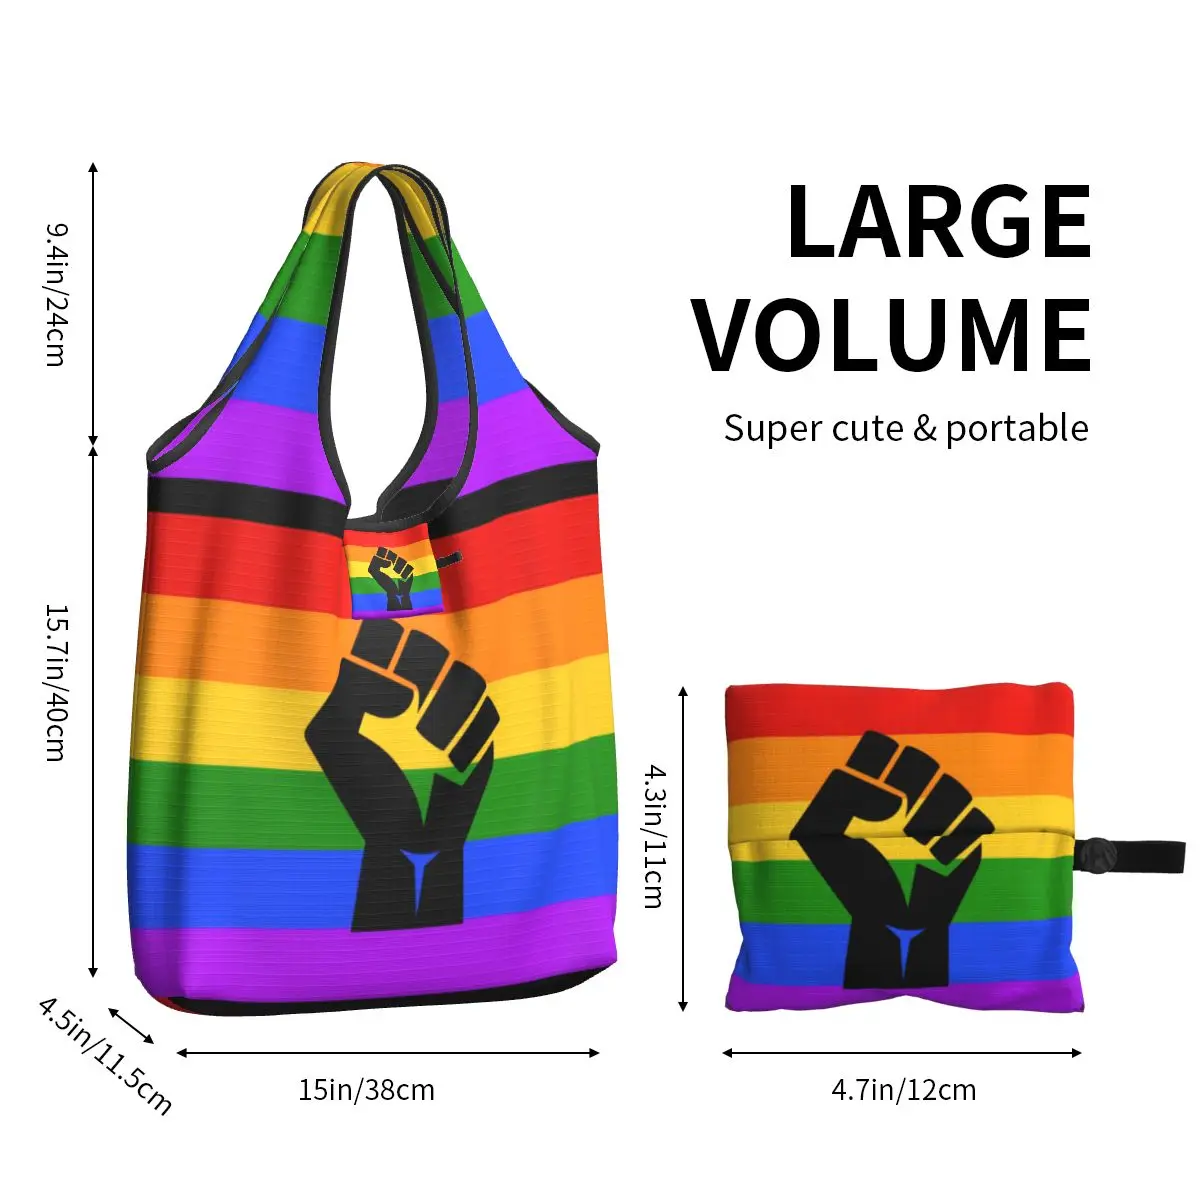 Black Lives Matter BLM Pride Сумки Для покупок С продуктами Kawaii Shopper Сумки Через плечо Большая Портативная ЛГБТ-Радужная сумка